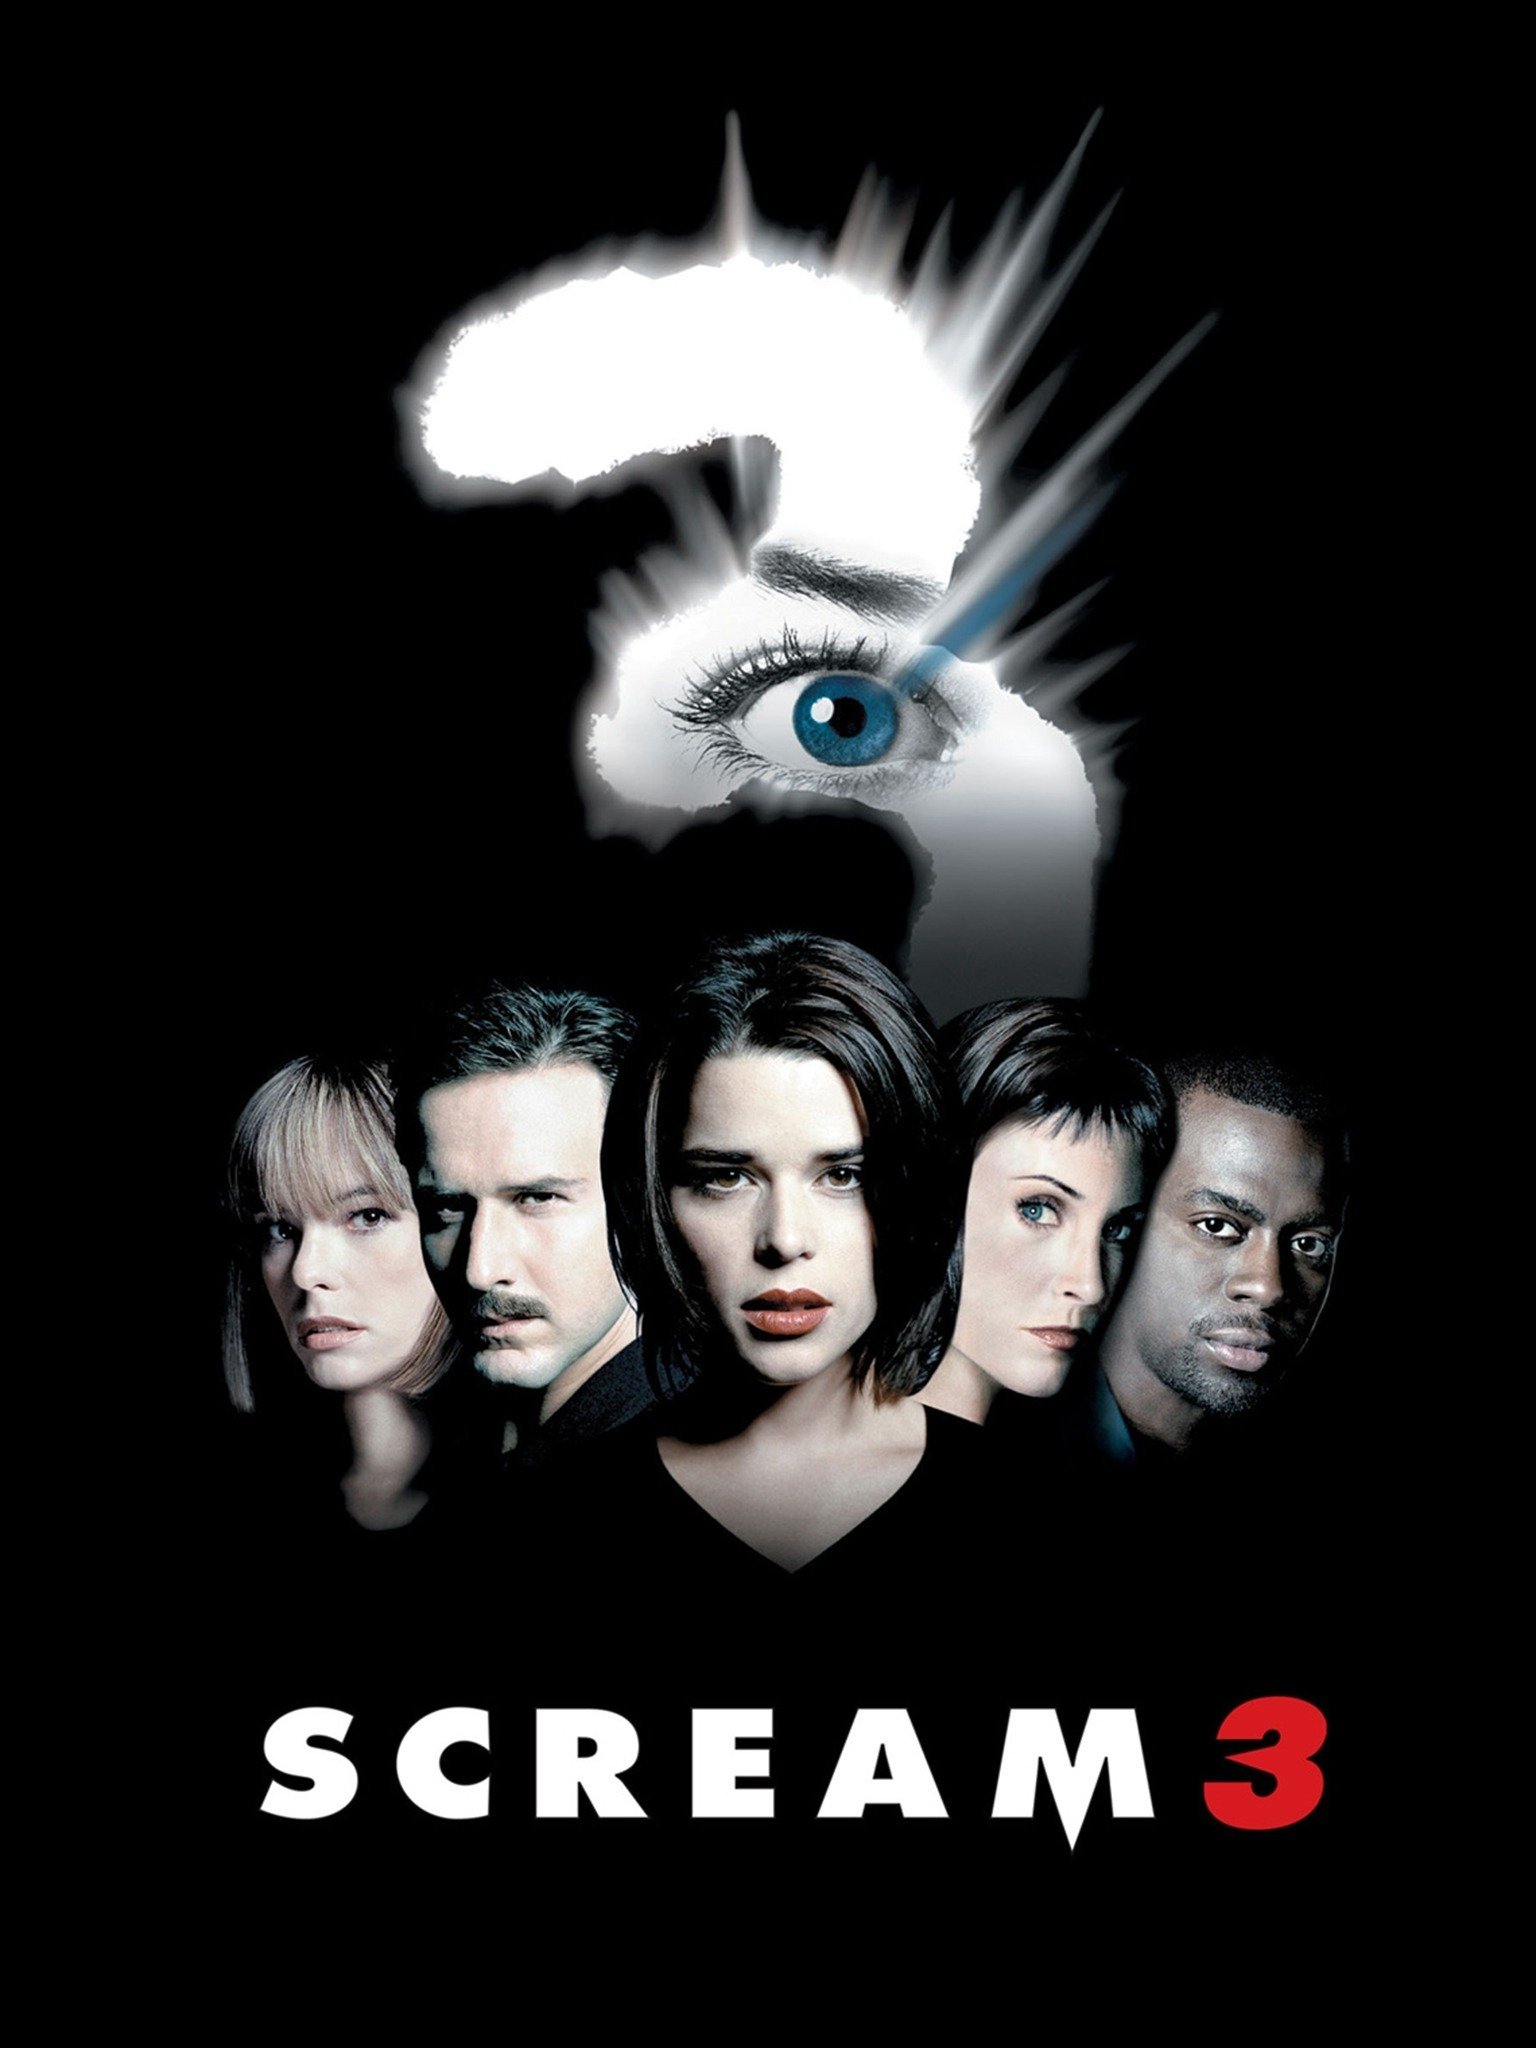 scream 3 movie review